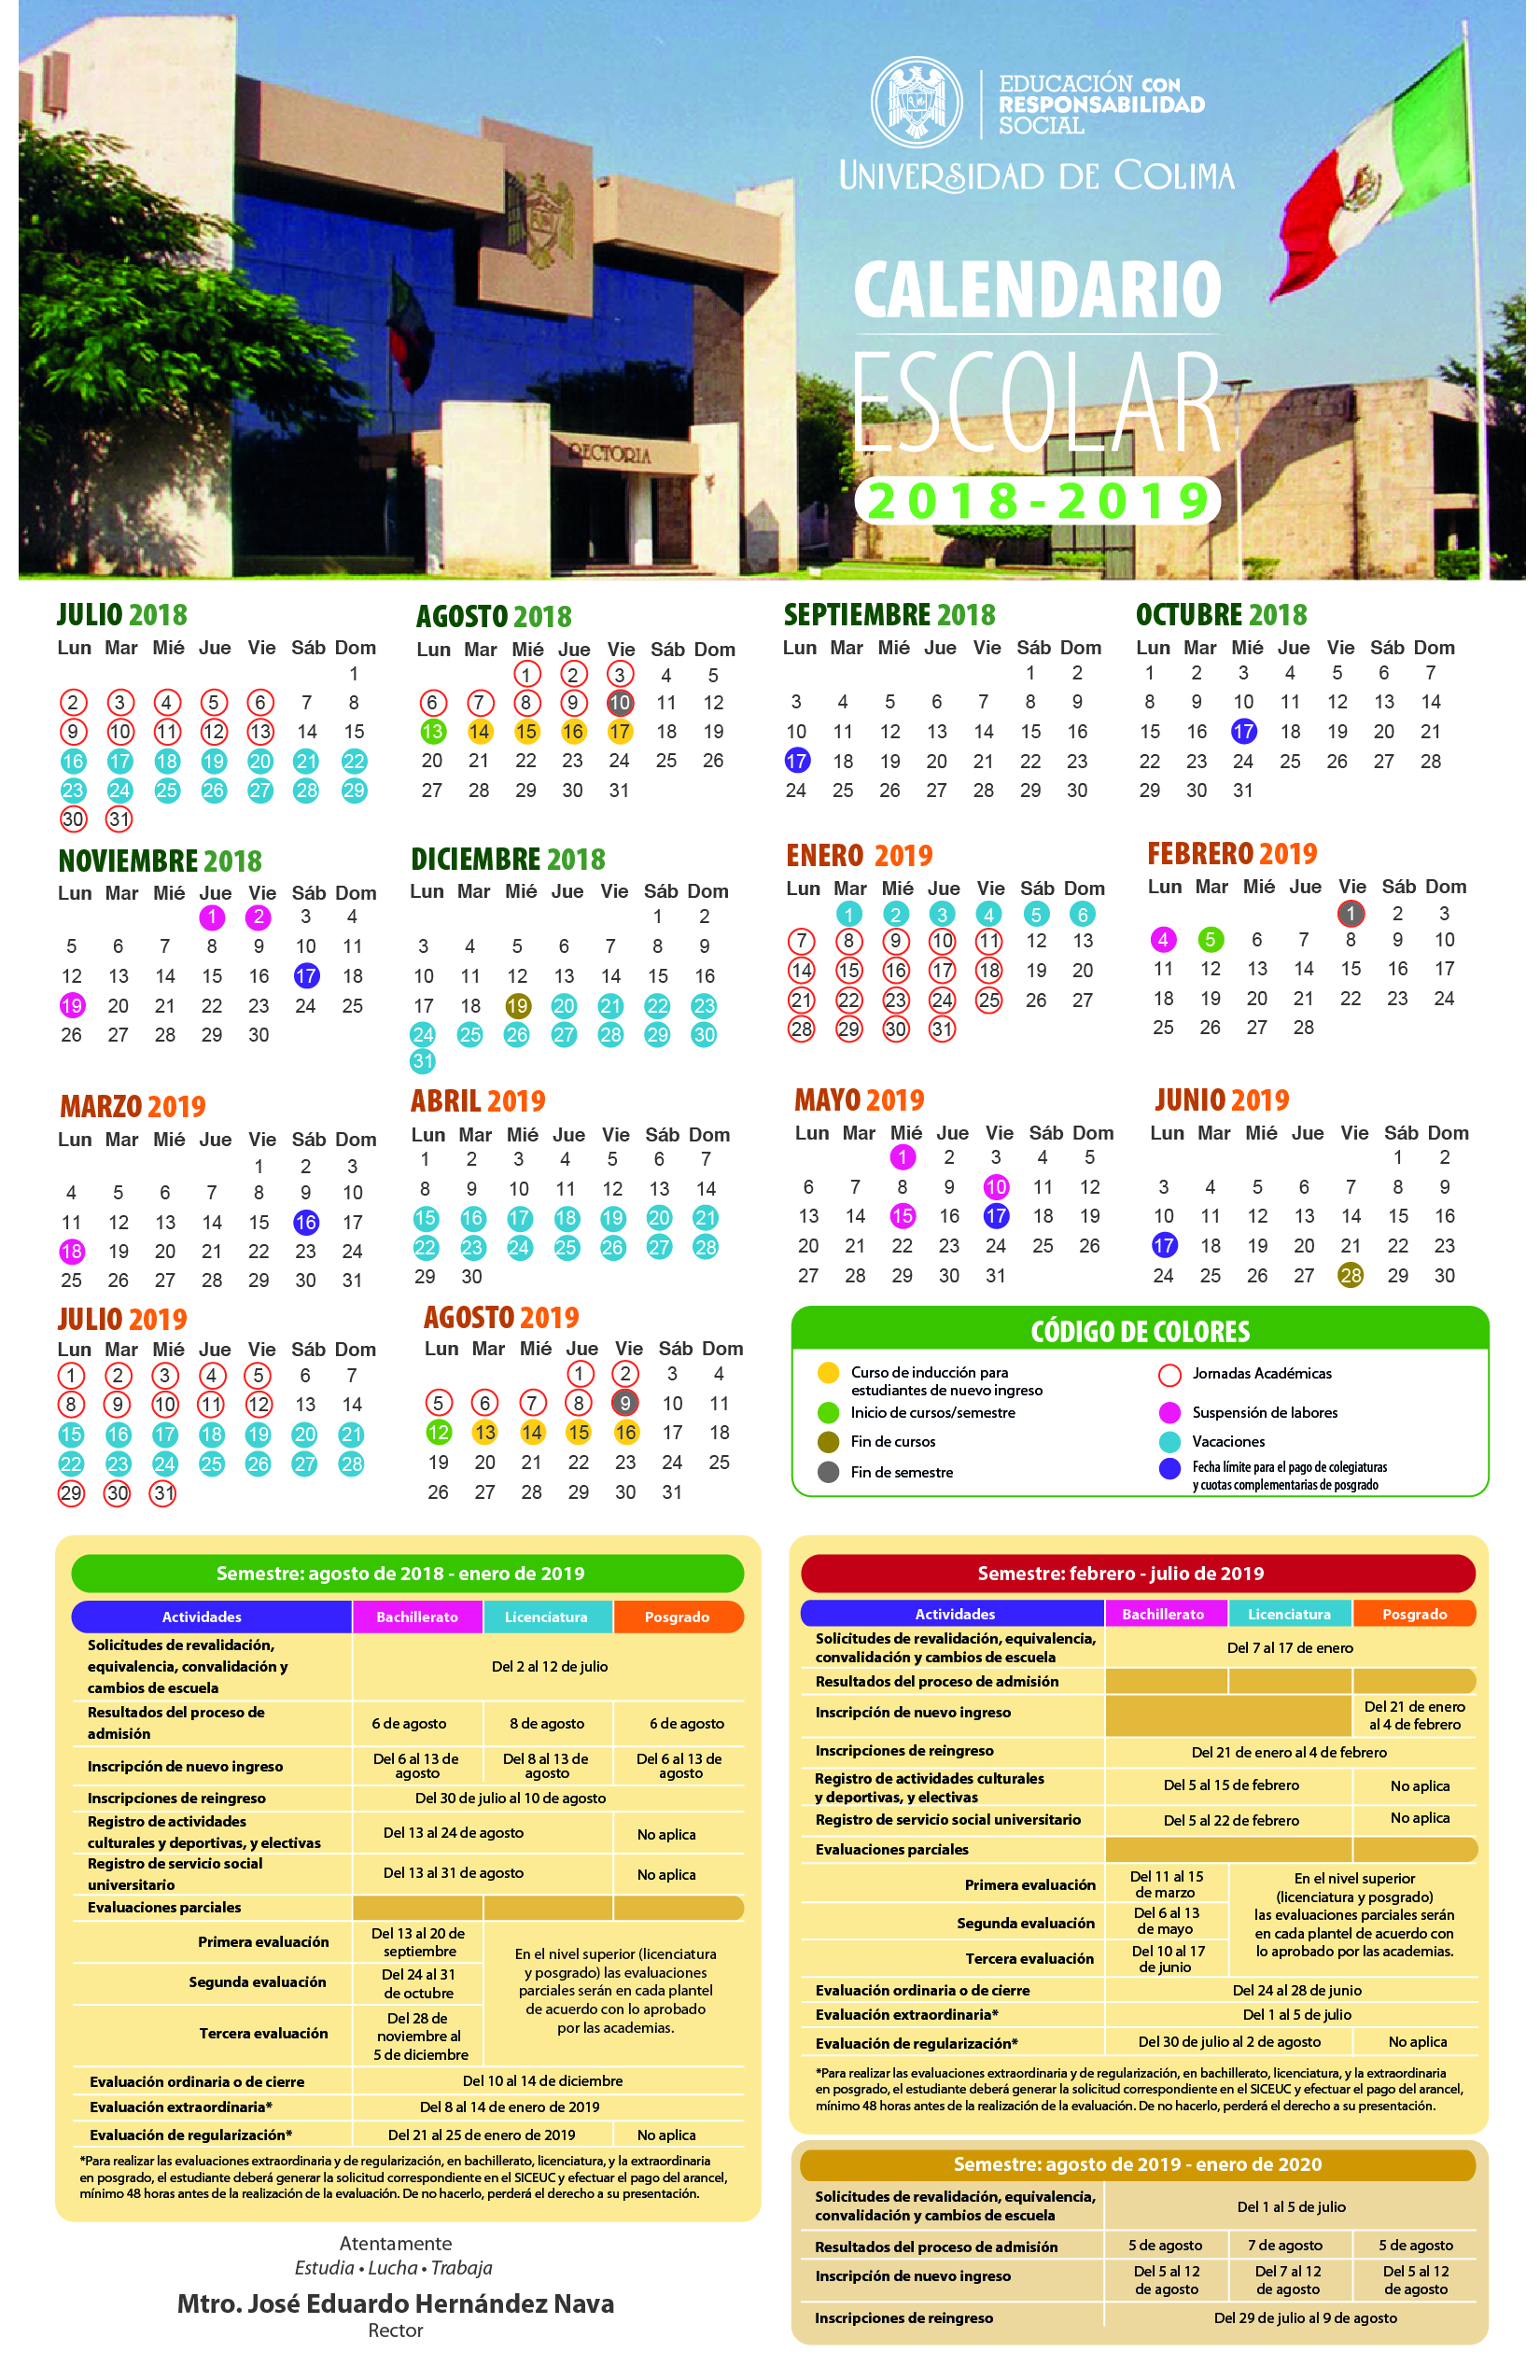 Calendario Escolar de la Universidad de Colima